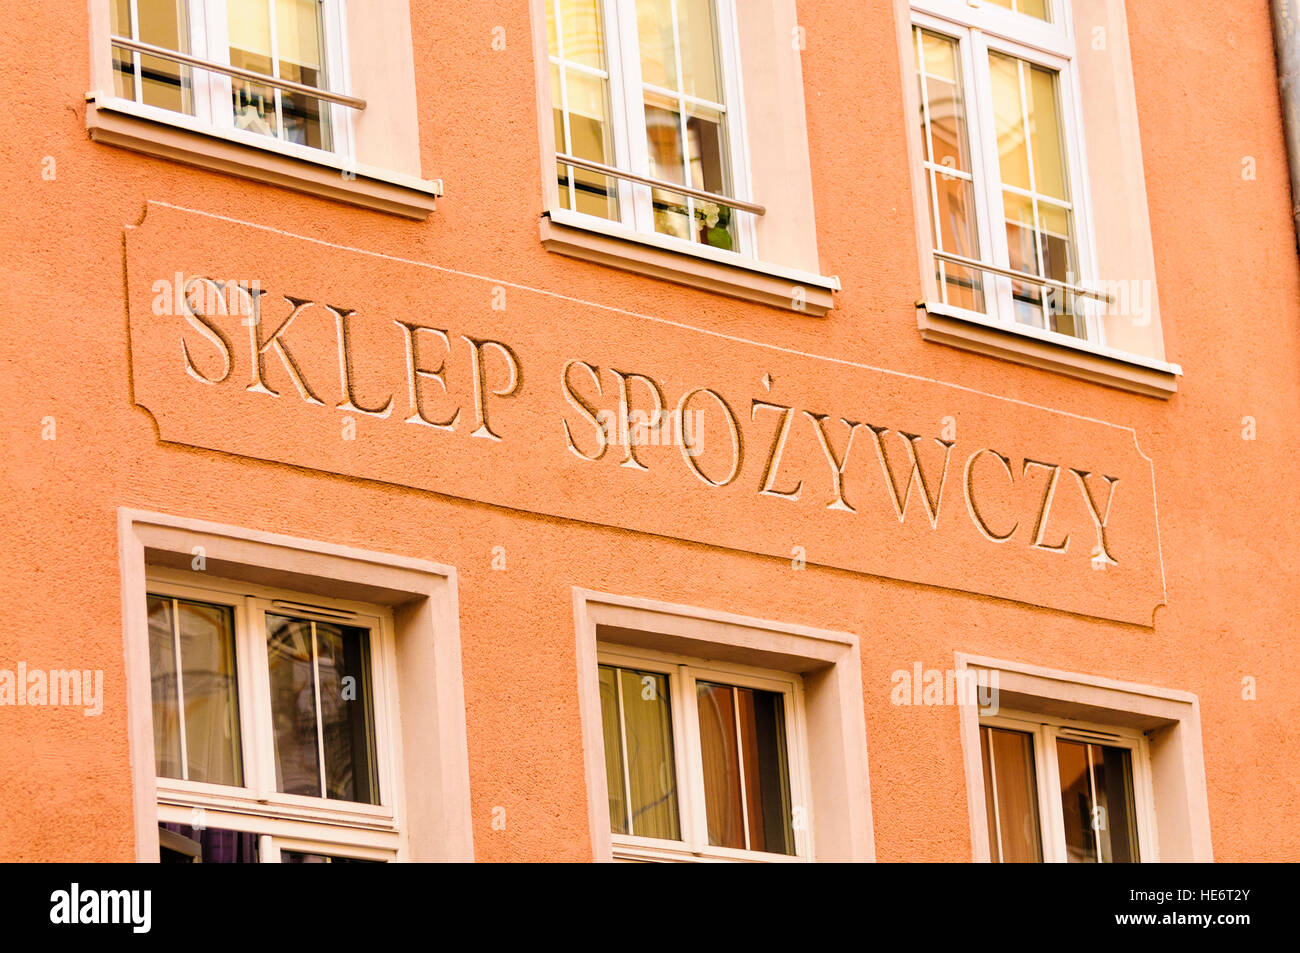 Sklep Spozywczy (Grocery Shop) in Gdansk, Poland. Stock Photo